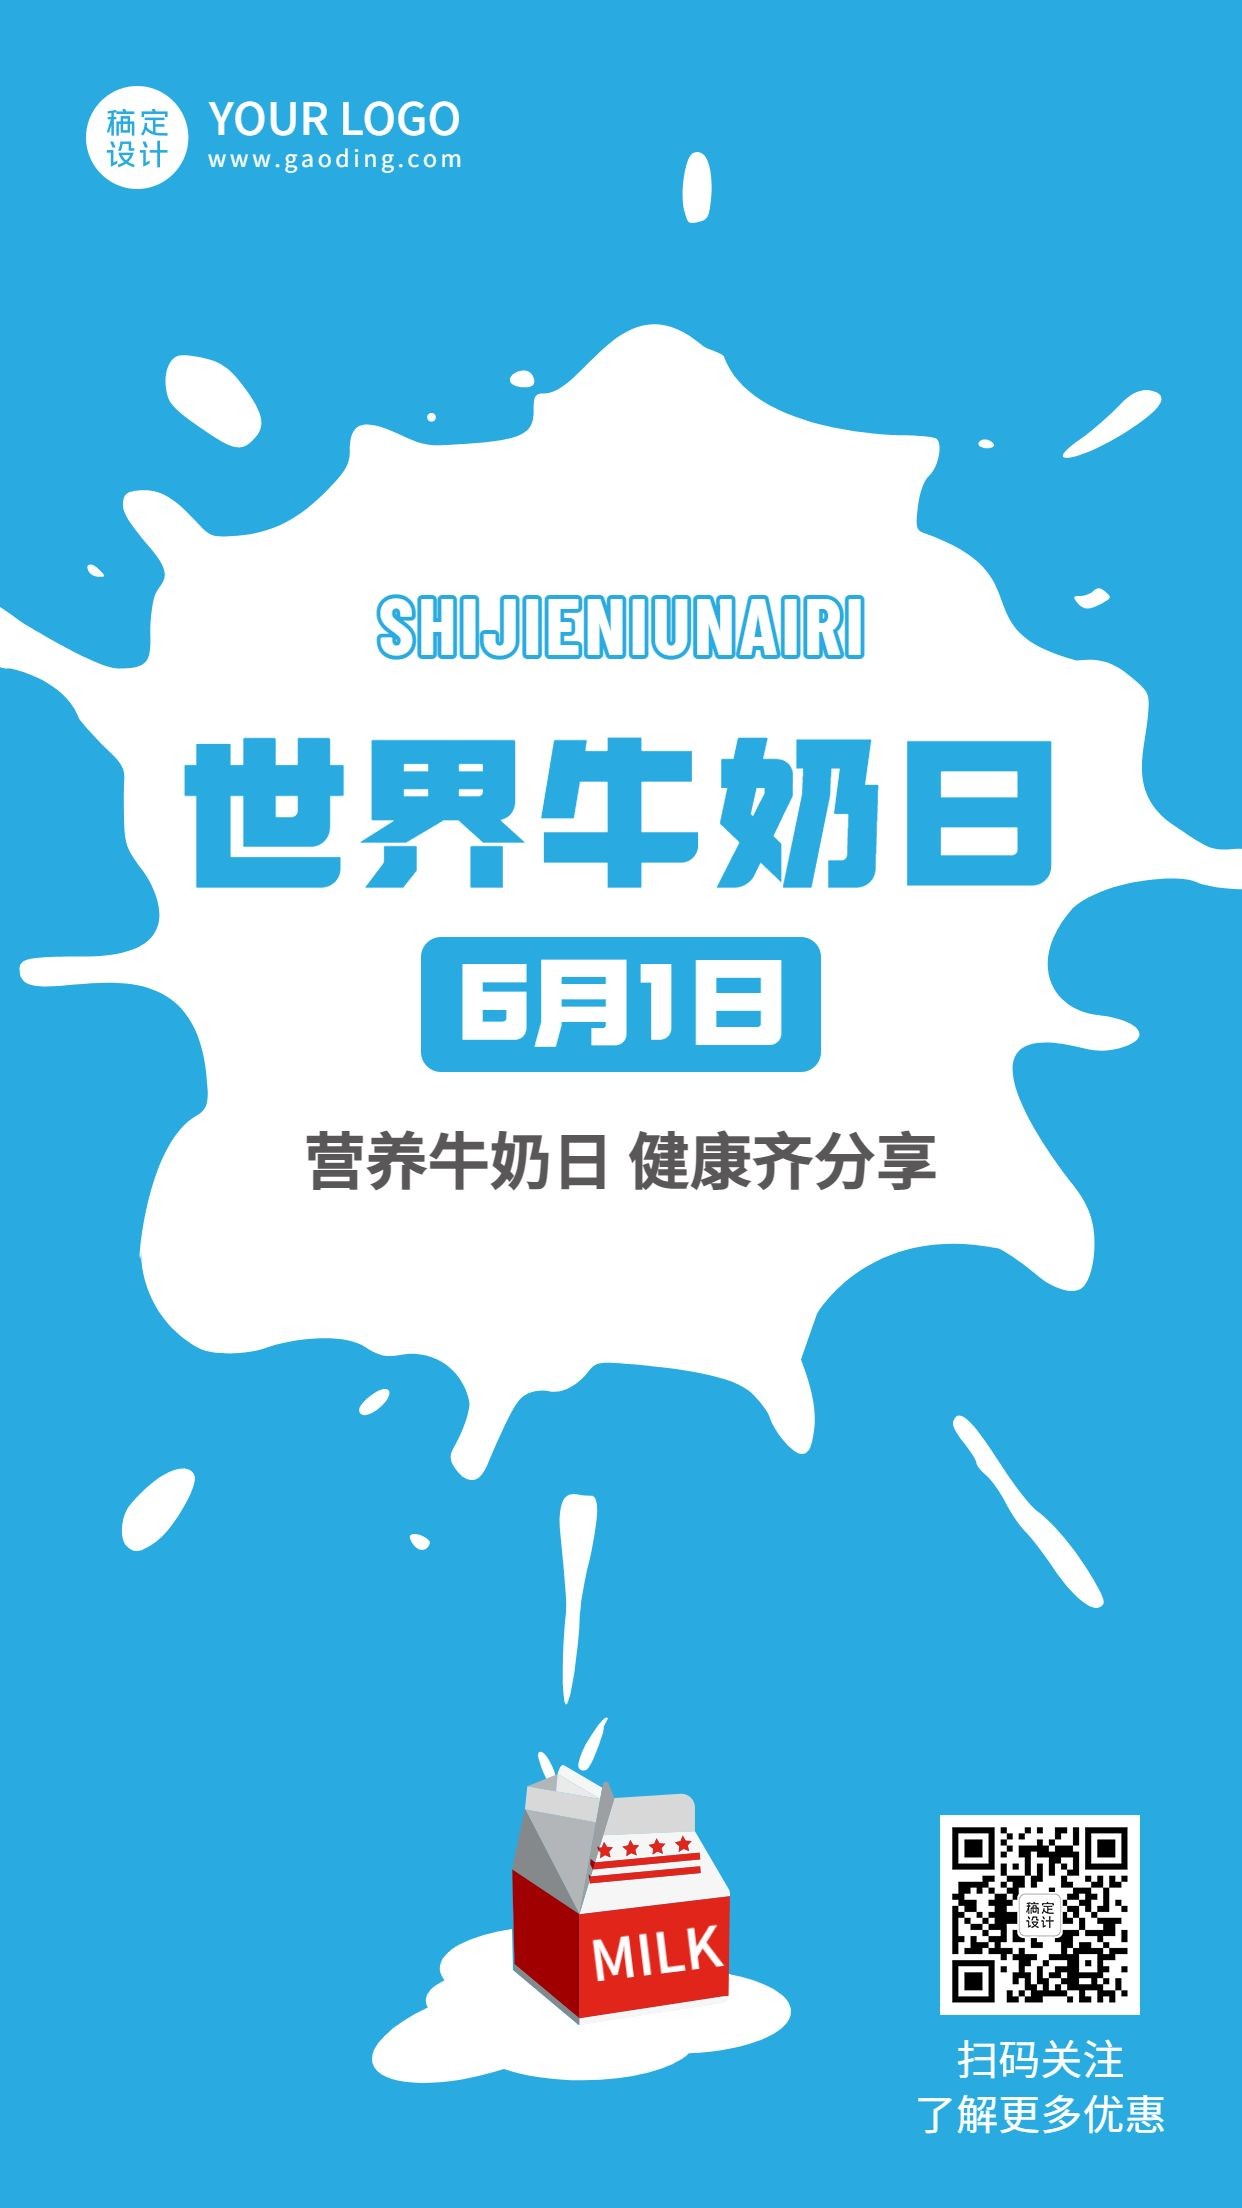 世界牛奶日节日宣传简约手机海报预览效果